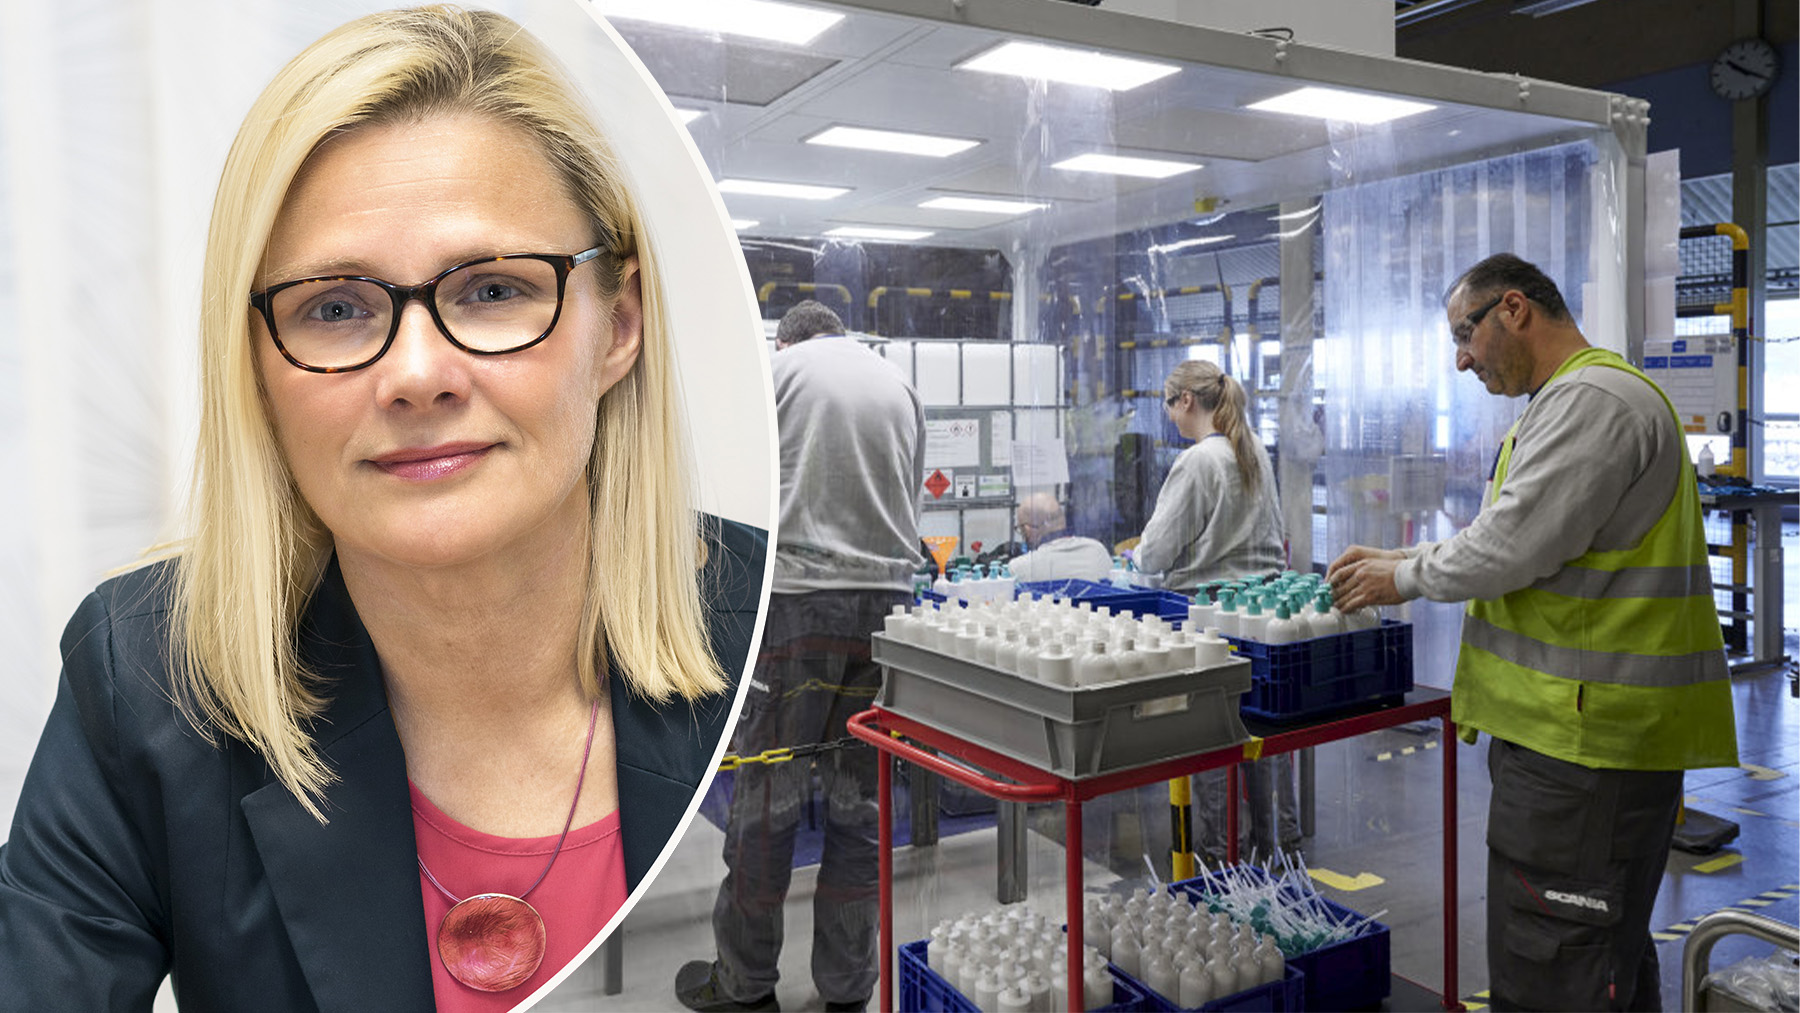 Att snabbt kunna hjälpa till i coronakrisen, bland annat med att paketera handsprit, ökade engagemanget hos medarbetare, menar Anna-Lena Strömsten på Scania.